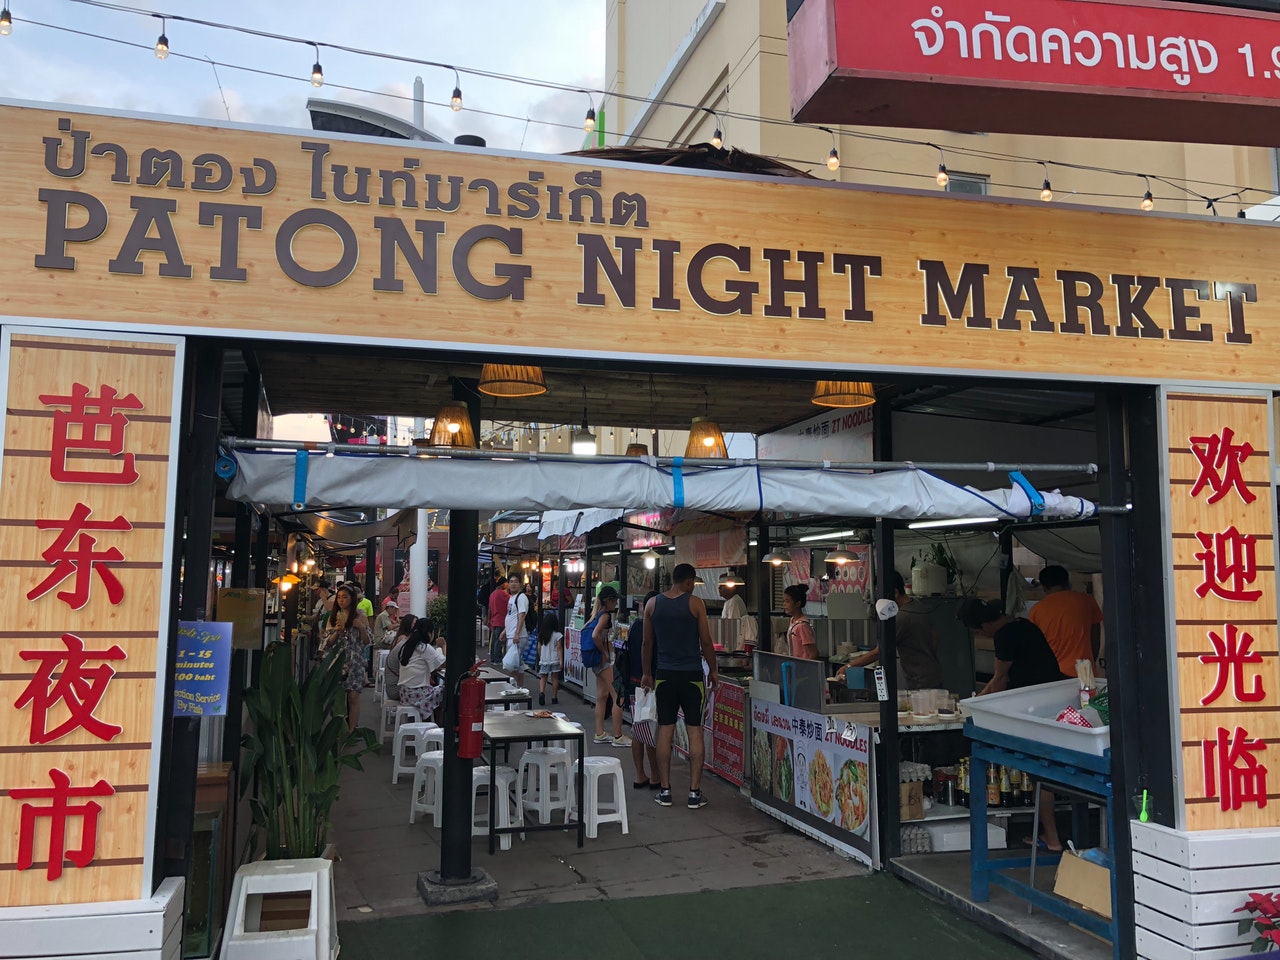 Patong Night Market in Phuket